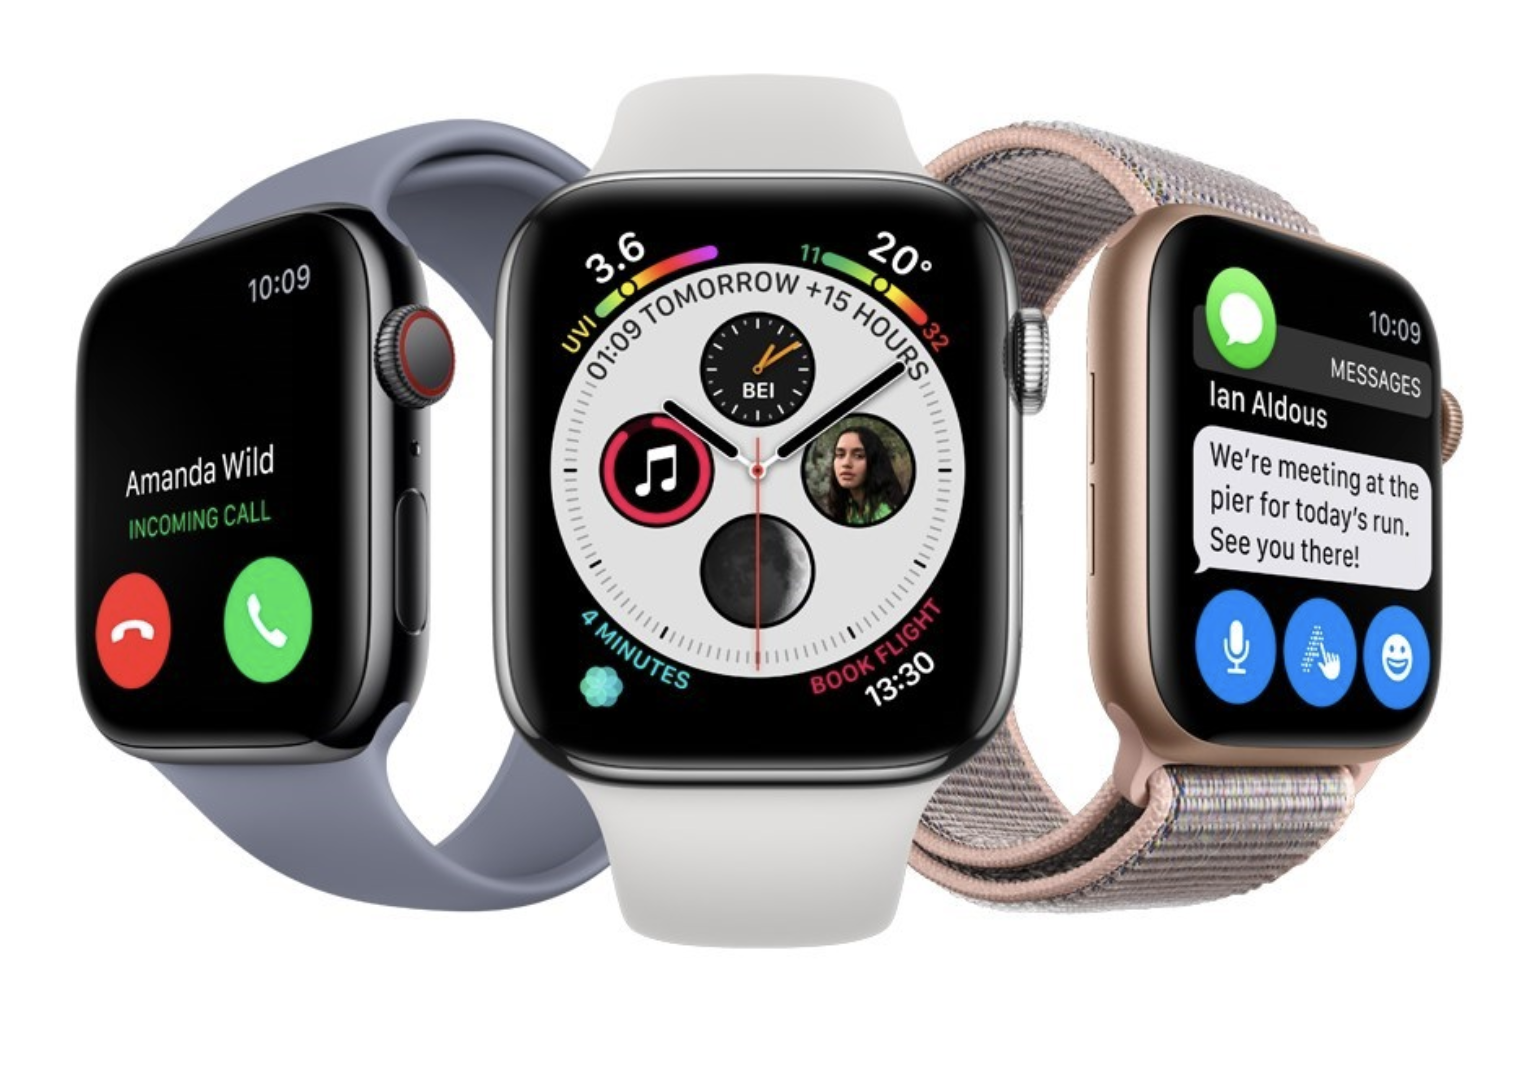 Tulevaisuuden Apple Watchiin odotetaan MicroLED-näyttöä. Kuvassa toistaiseksi uusin Apple Watch Series 4.